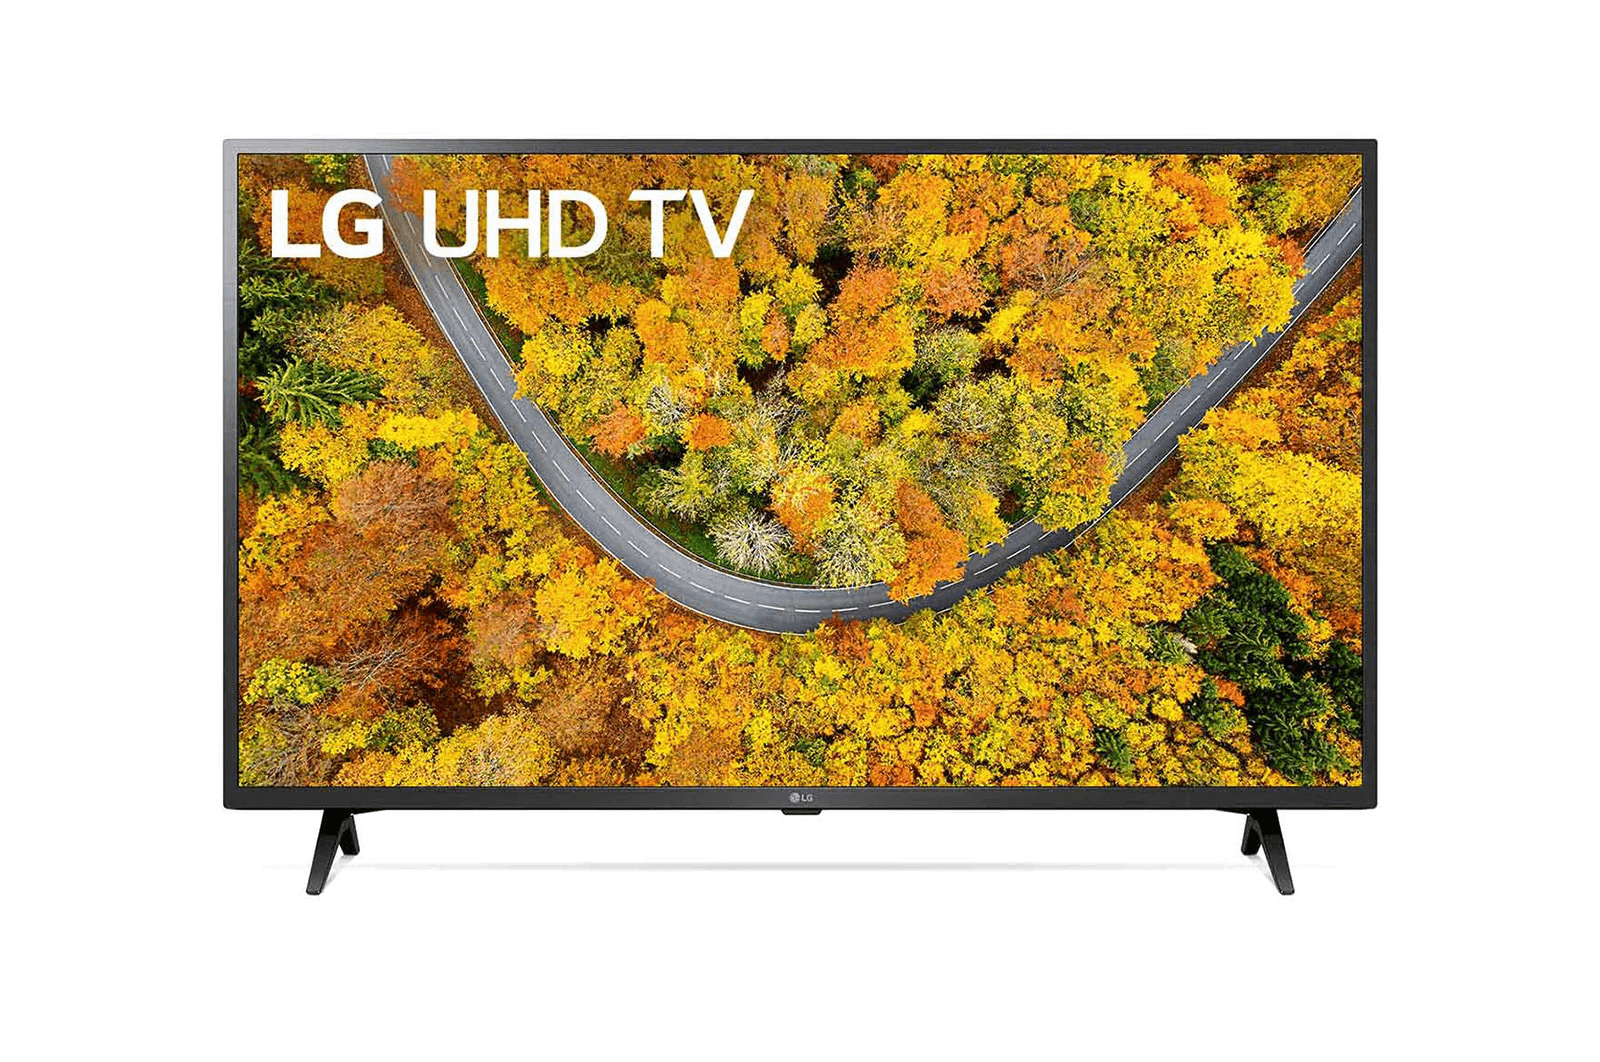 LG - LED TV 43UP7550PTC | 1 - Login Megastore